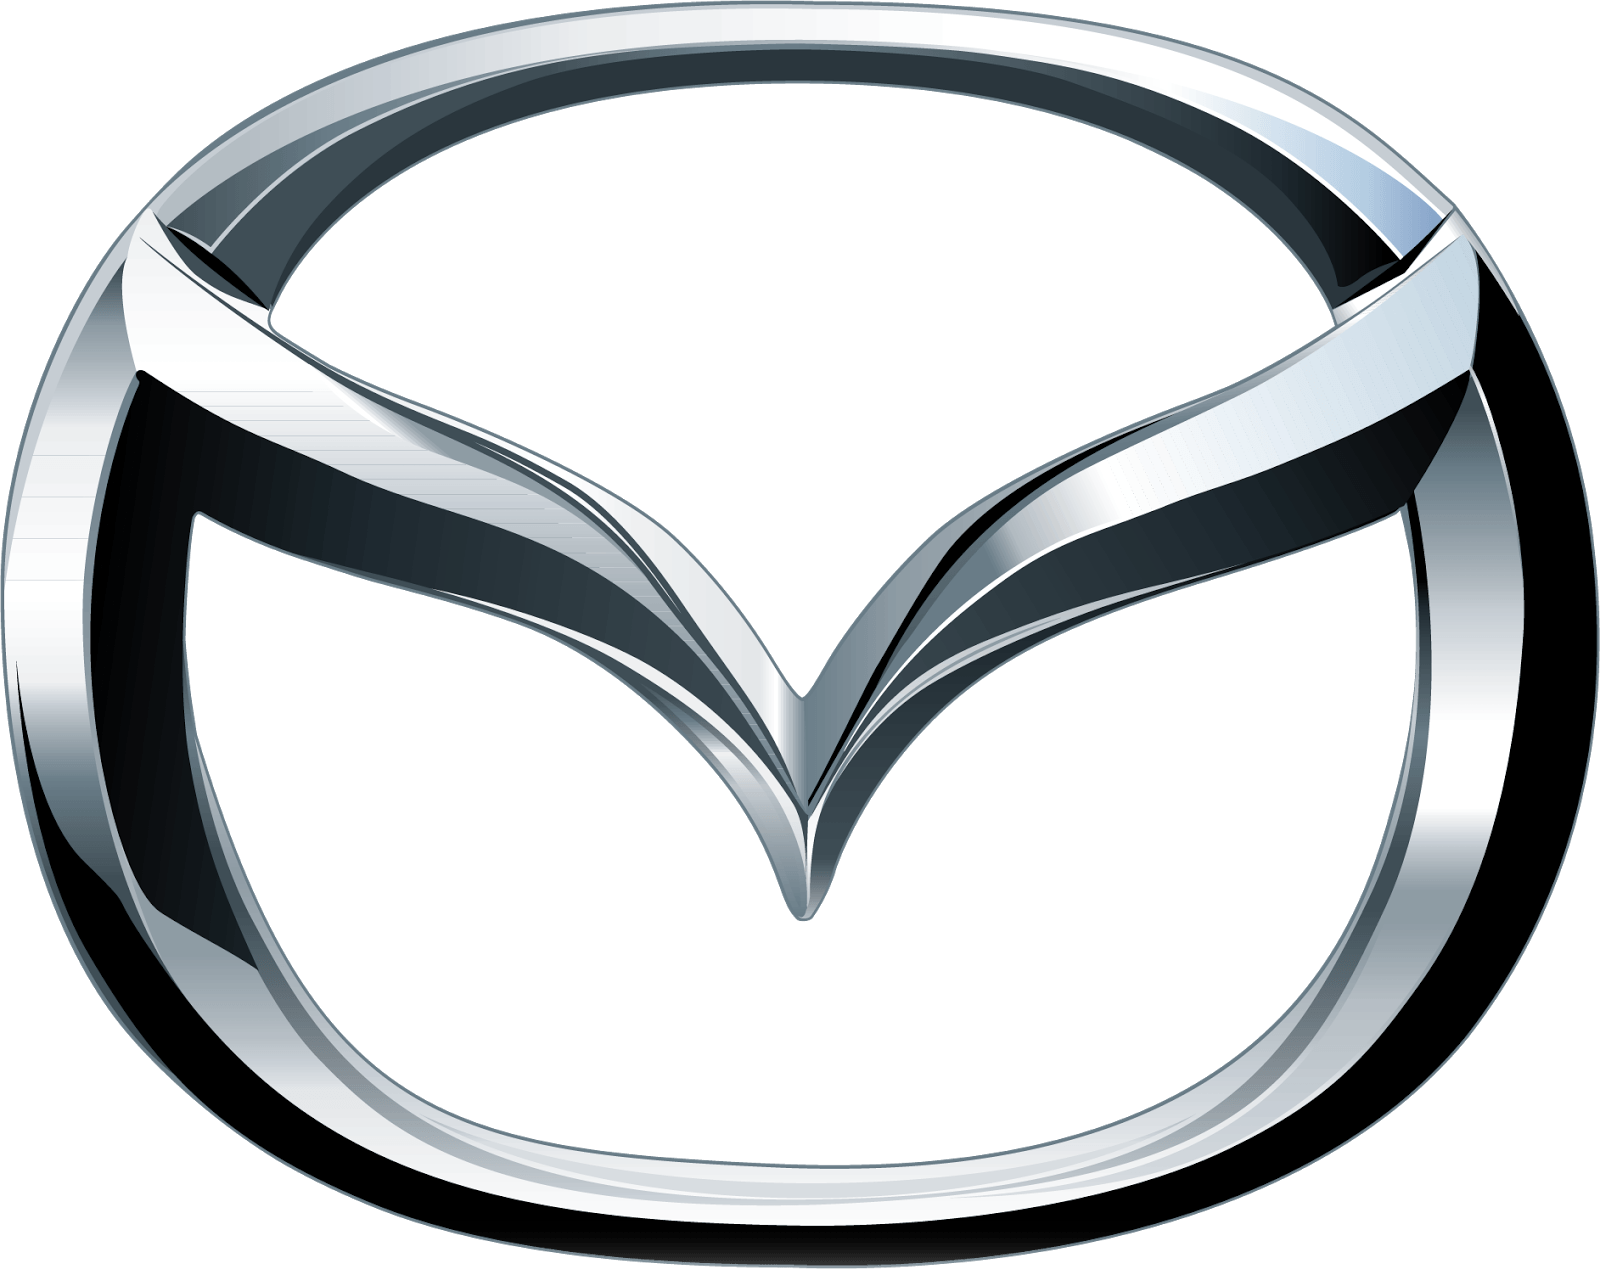 Mazda-logo